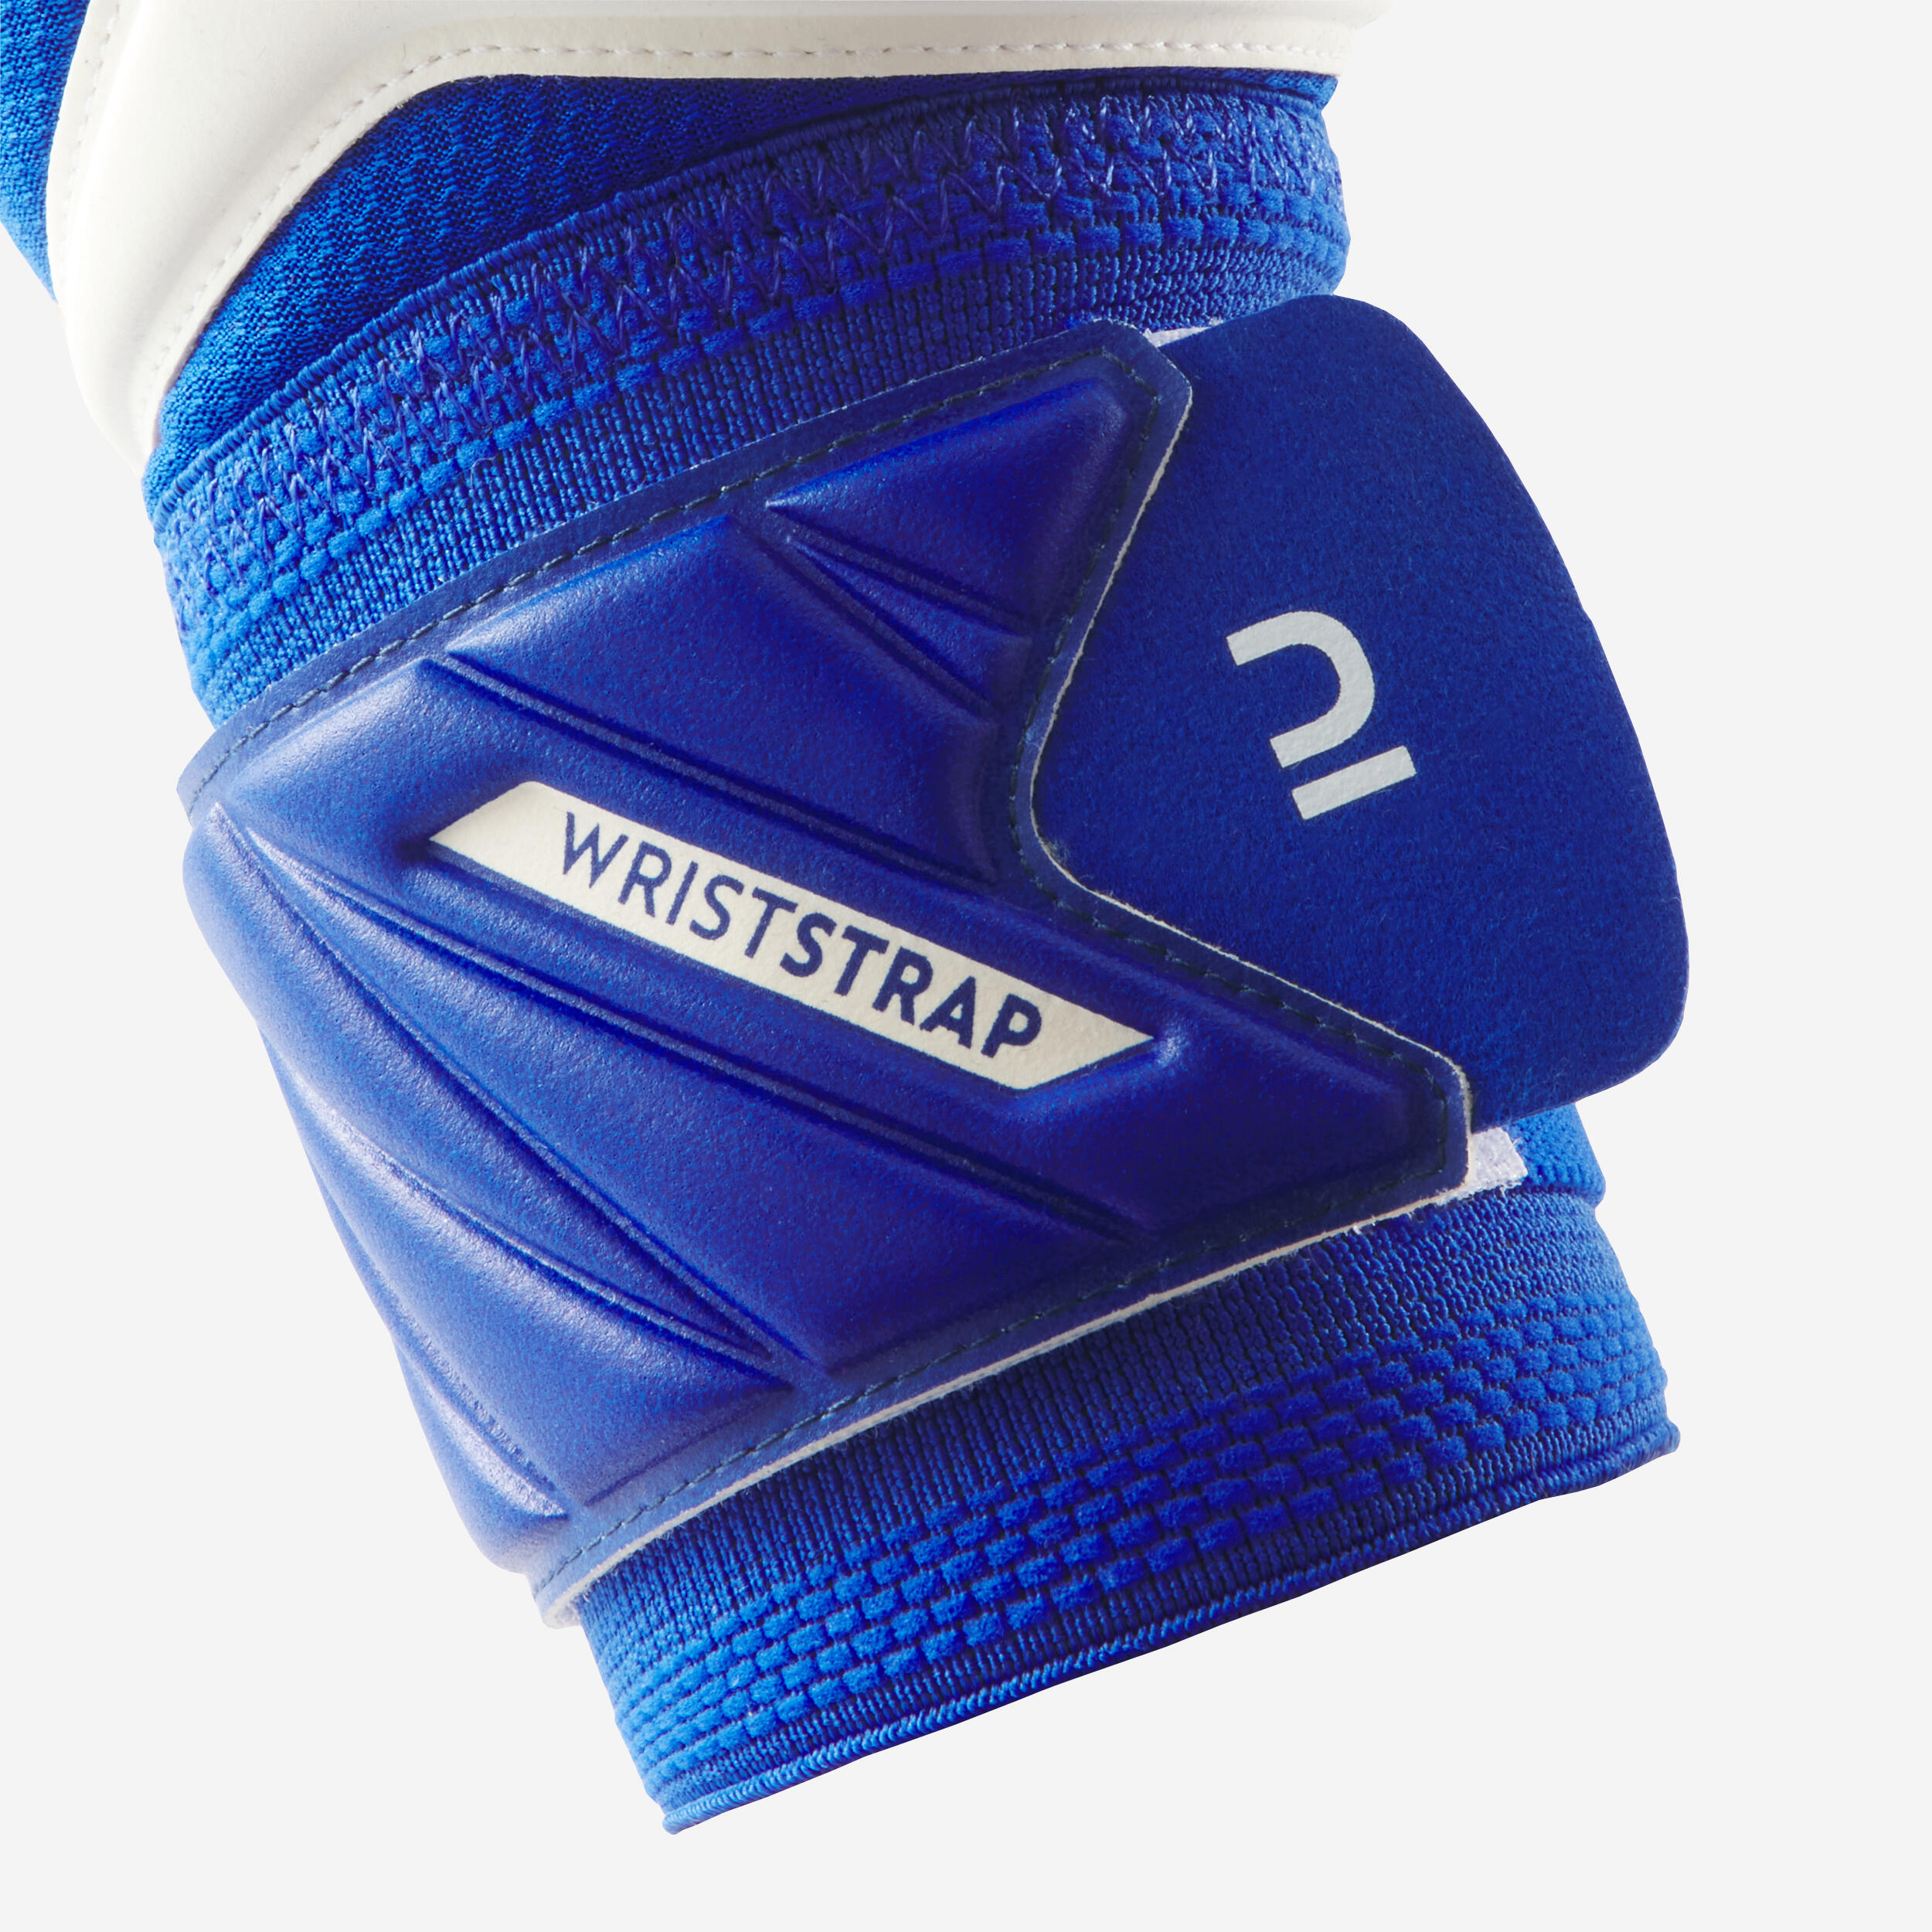 Adult Football Goalkeeper Gloves F500 Viralto - White/Blue 7/7